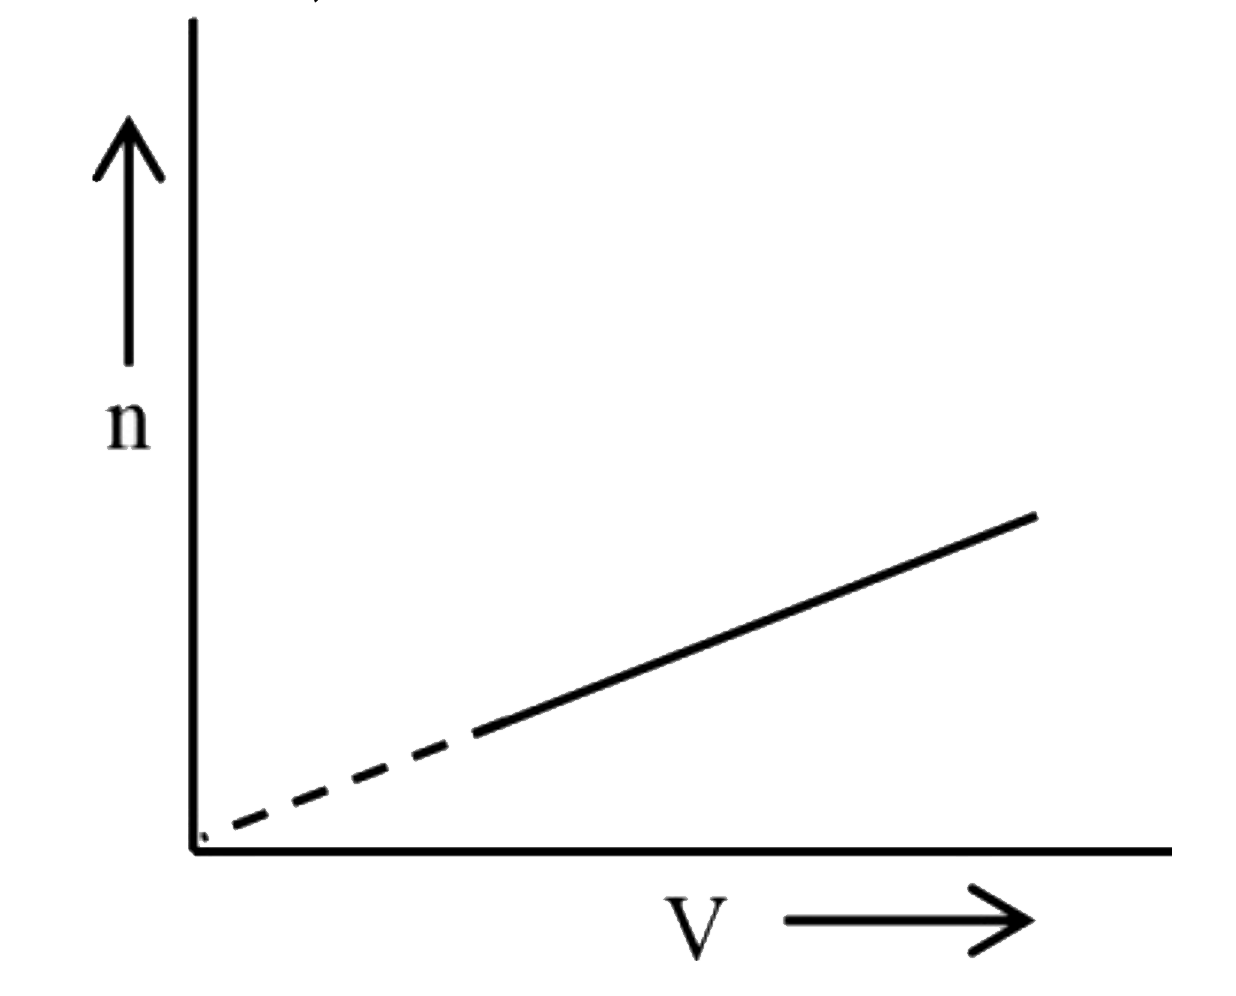 2.463 L धारिता के एक पात्र में 6.5 atm पर रखी गई आदर्श गैस के दिए गए एक मोल के लिए, परिकल्पना के लिए आवोगाद्रो समानुपातिक स्थिरांक है (चित्र देखें)